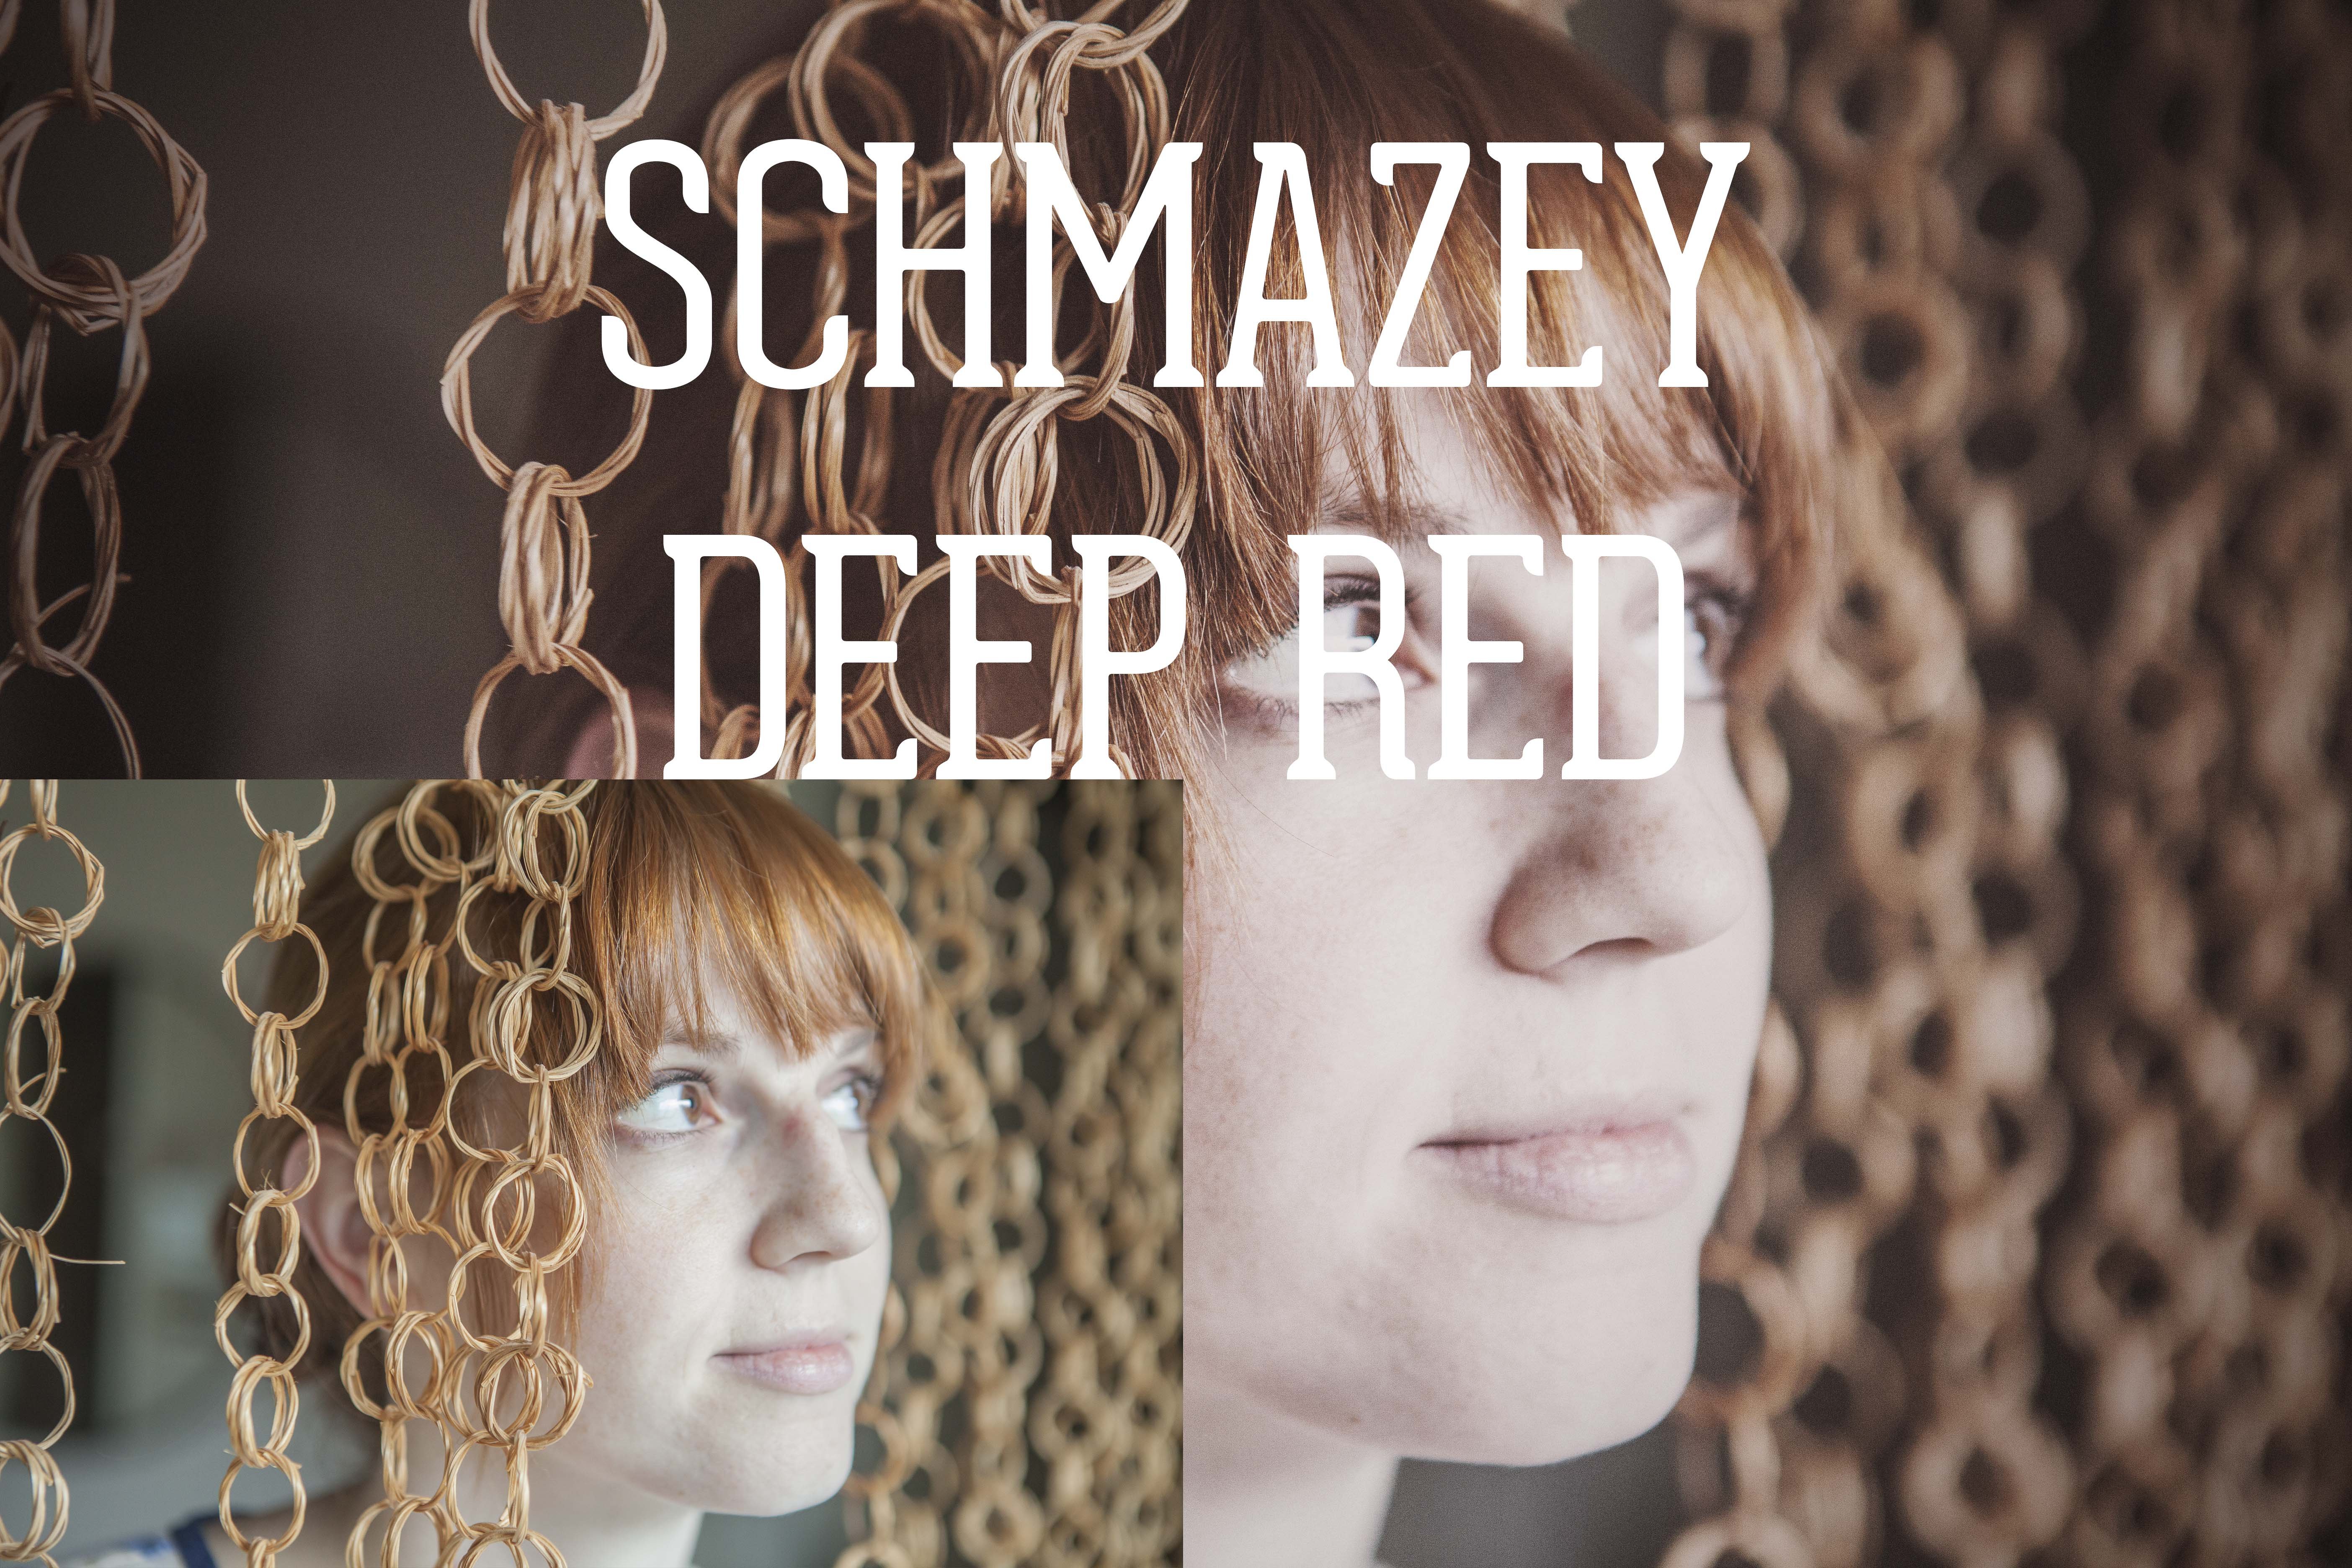 schmazey deep red1 29